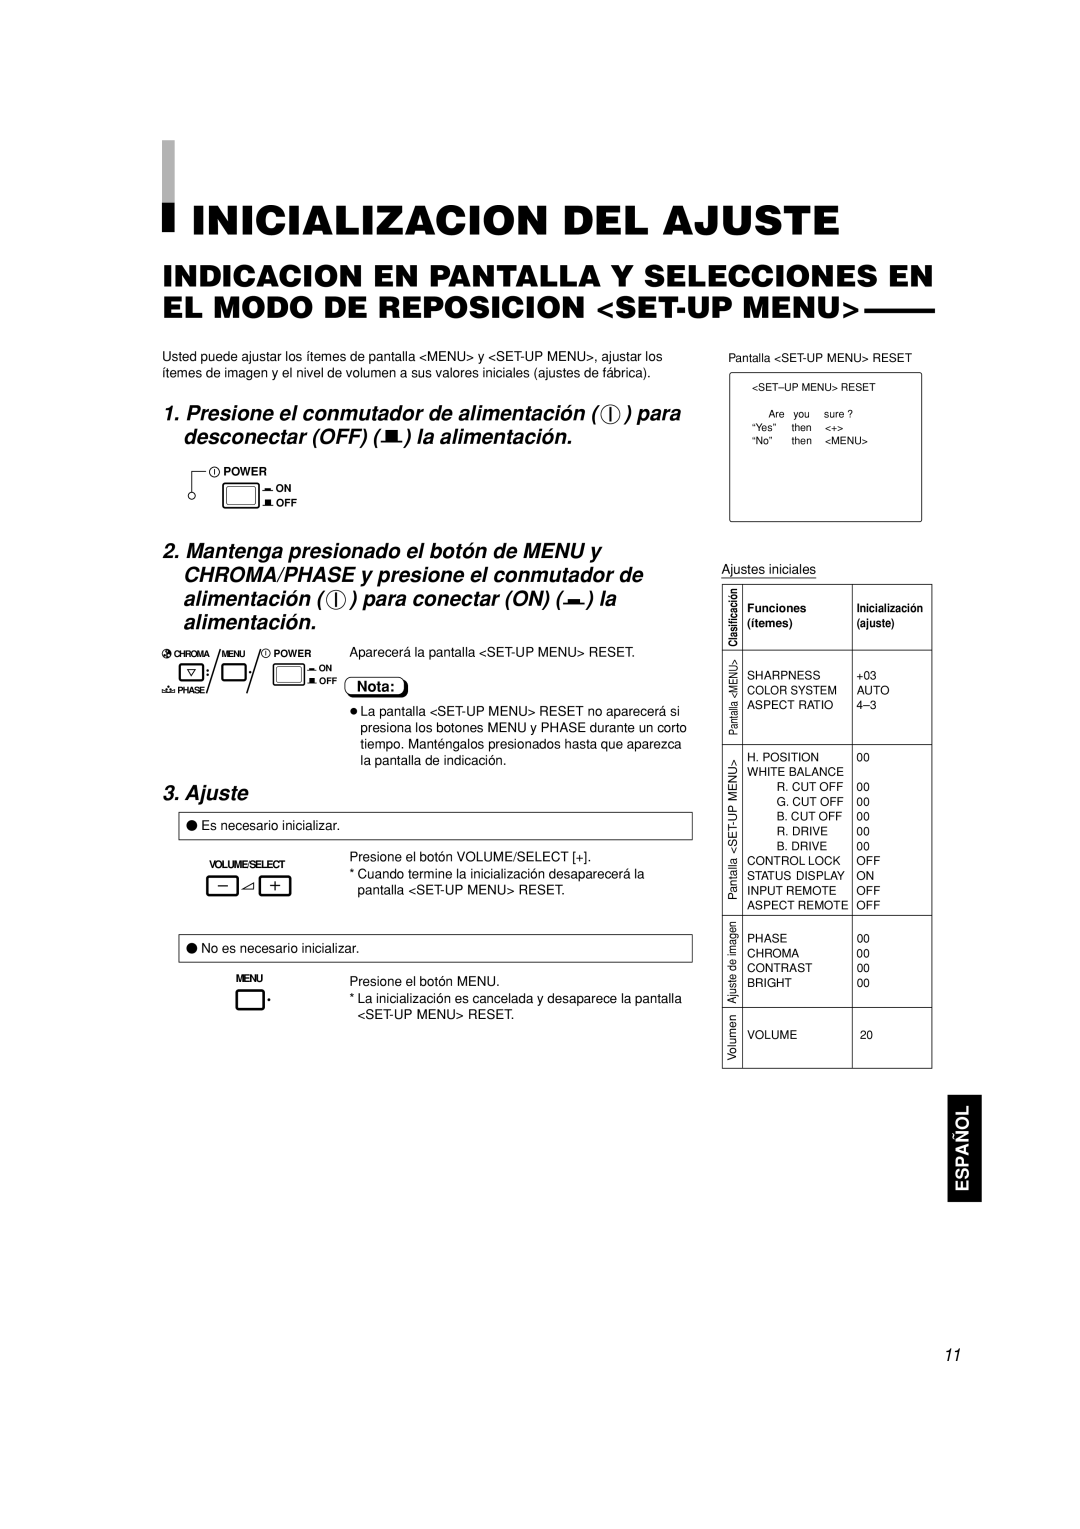 JVC TM-A101G manual Inicializacion Del Ajuste, alimentación para conectar ON g la alimentación, Español, Nota 